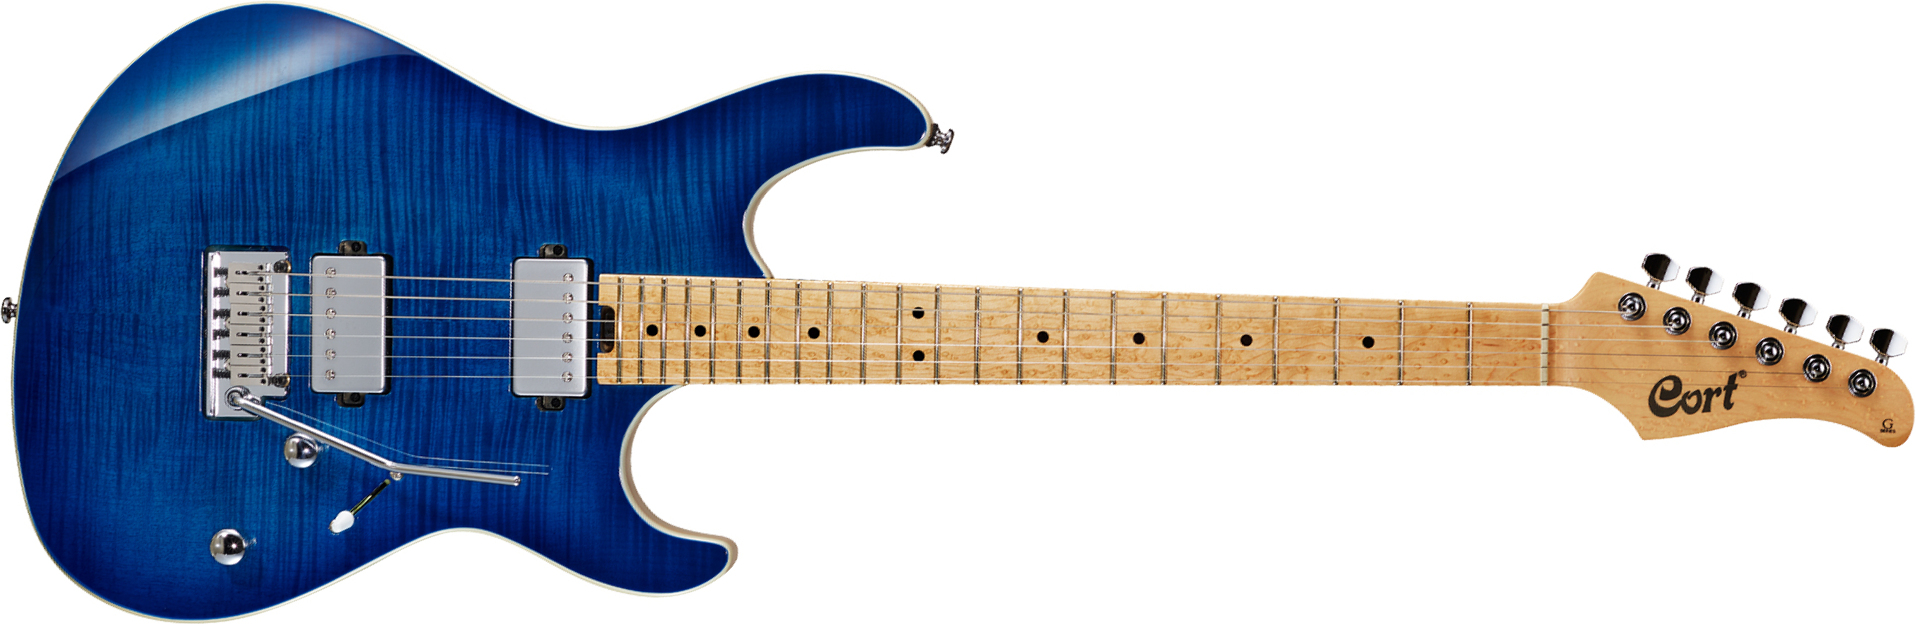 Cort G290 Fat Bbb Hh Trem Mn - Blue Burst - Guitarra eléctrica con forma de str. - Main picture